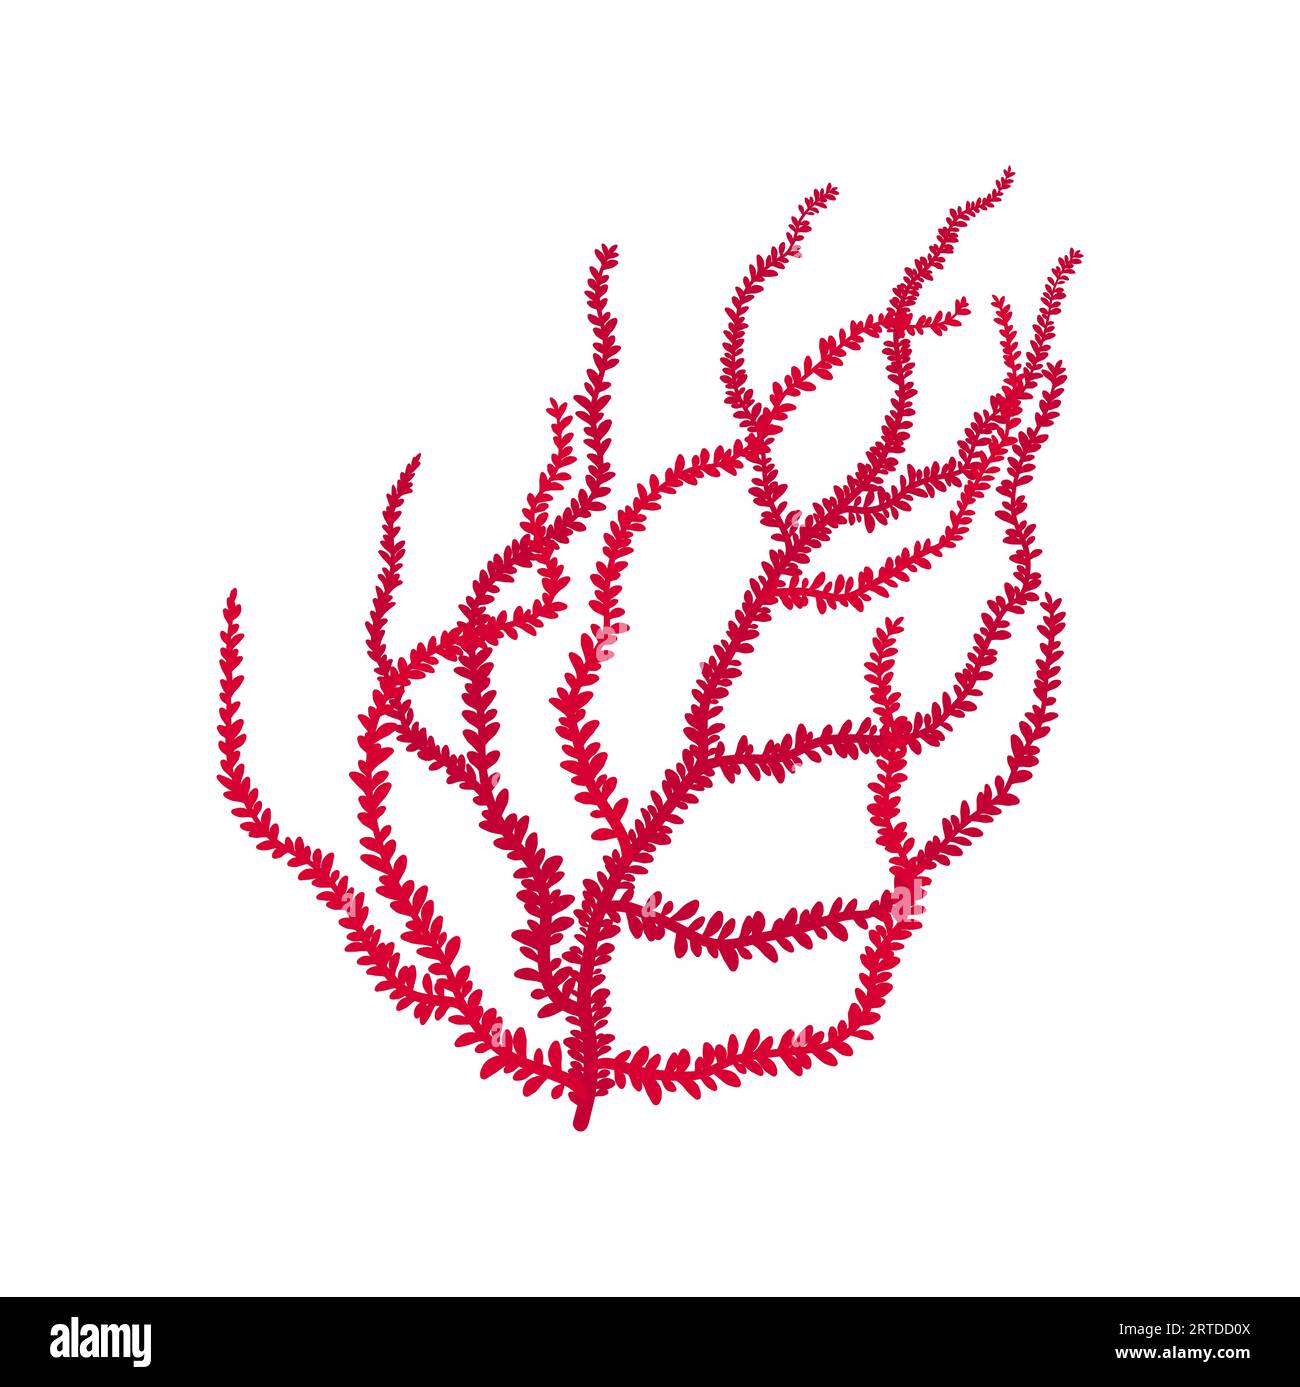 Fingerlederkoralle mit scharfen Kanten pinkfarbenes Cartoon-Seetang-Symbol. Vektoraquarium und Meeresboden Dekoration. Aquatischer Unterwasserorganismus, Algen Stock Vektor